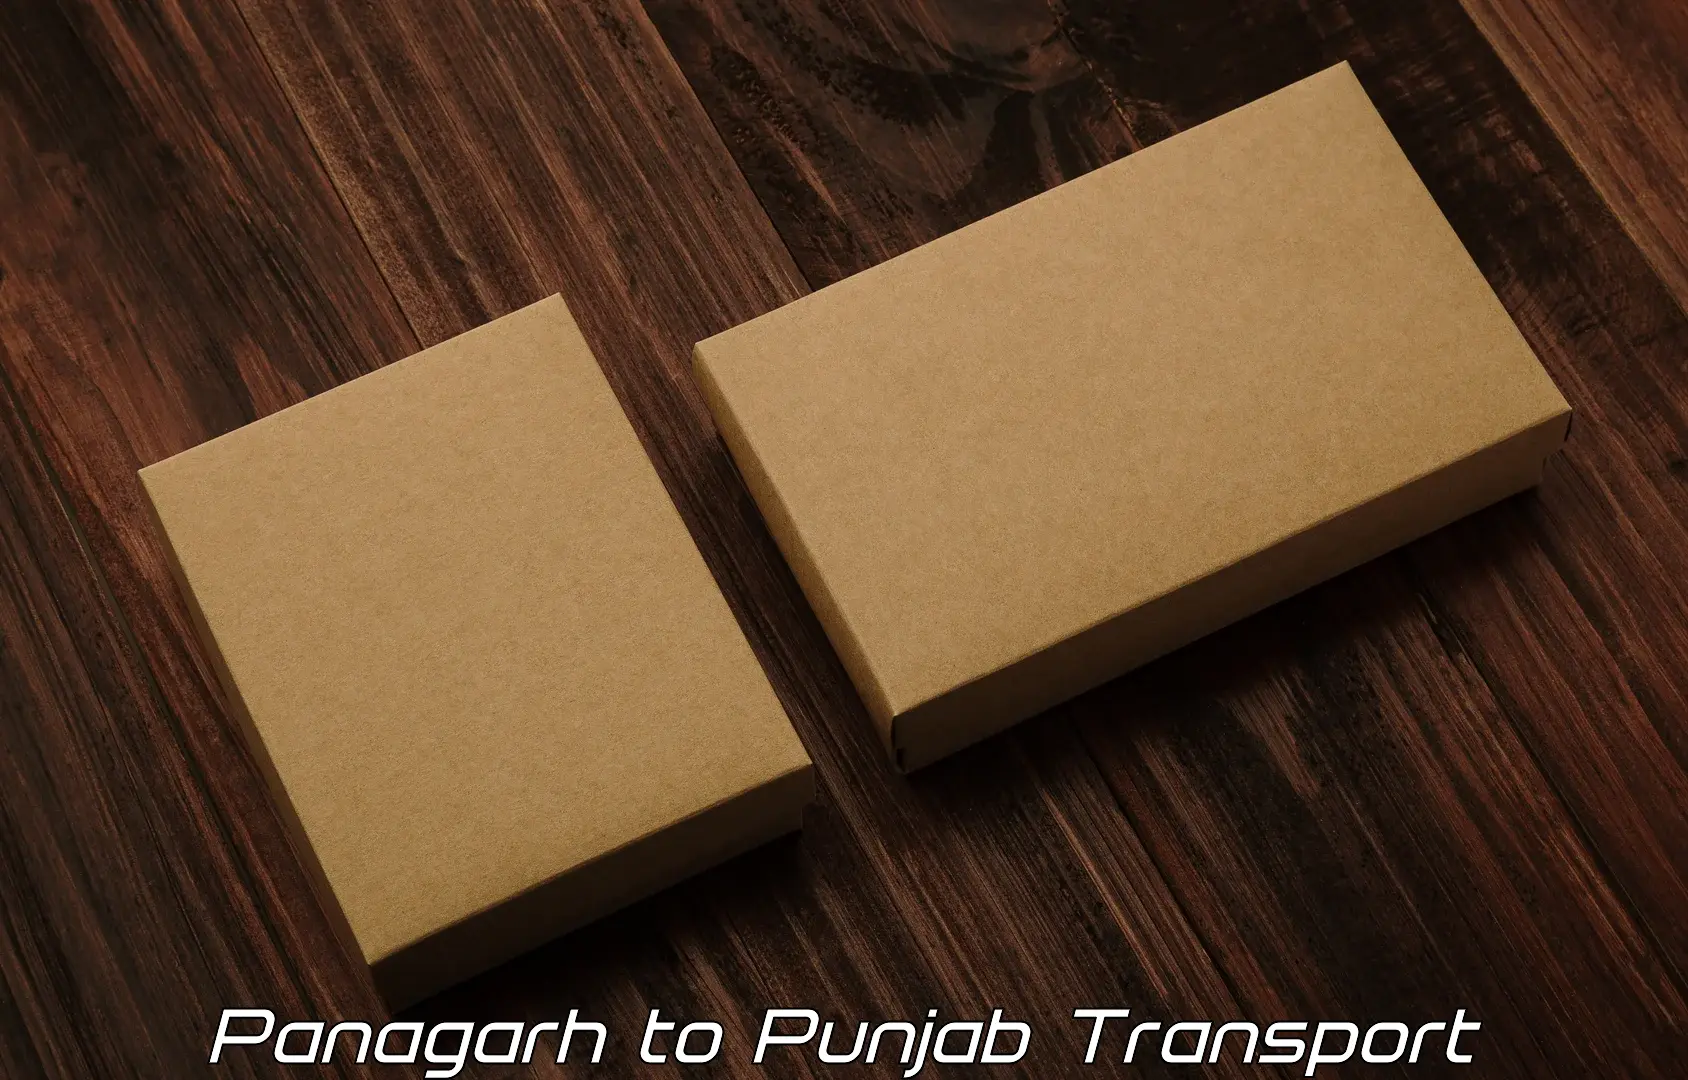 Furniture transport service Panagarh to Talwara